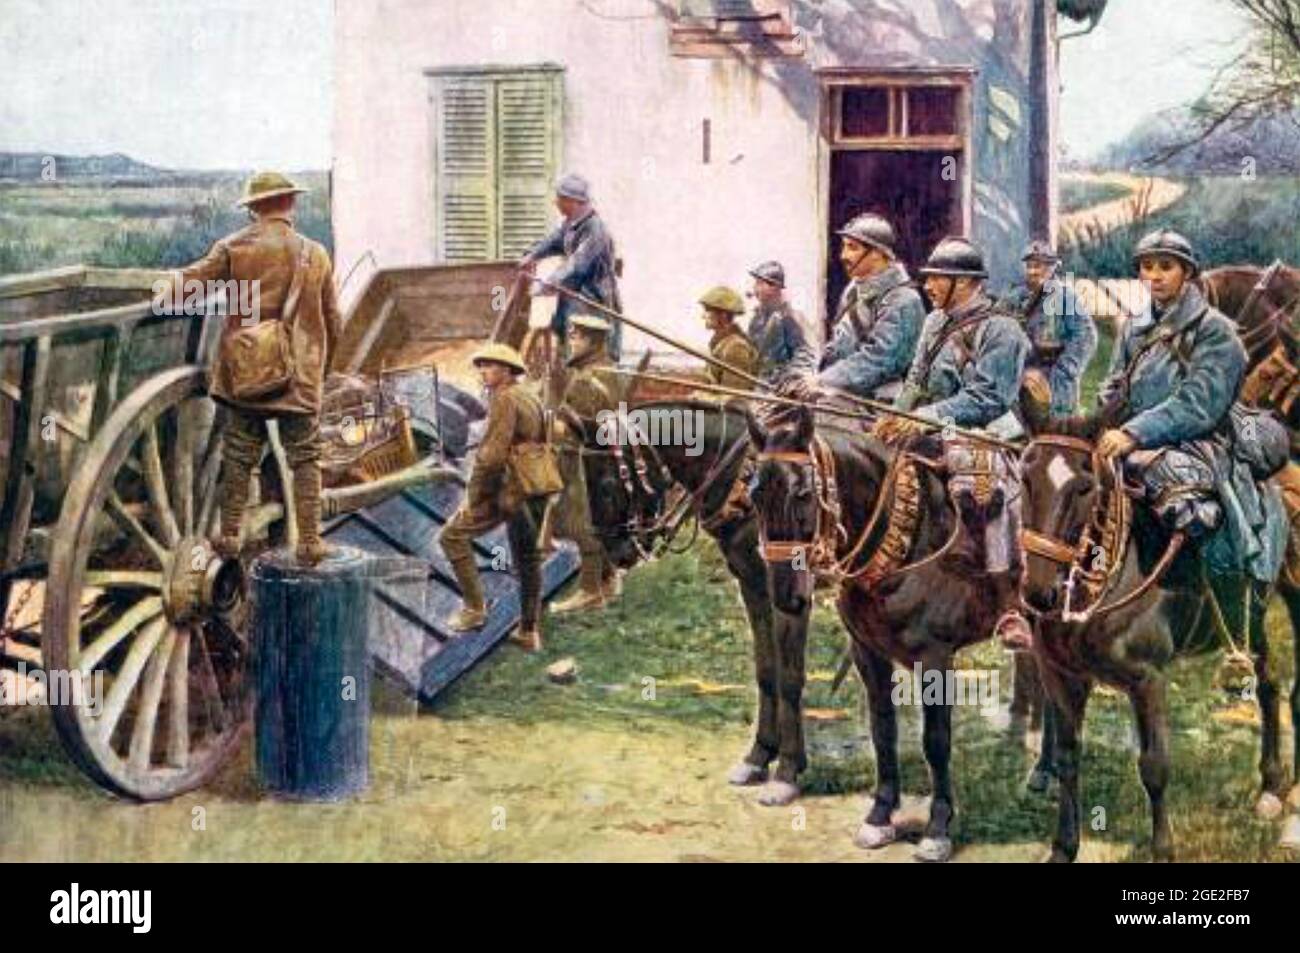 AVANT-POSTE ANGLO-FRANÇAIS DANS LA PREMIÈRE GUERRE MONDIALE. La cavalerie française attend derrière une arricade de charrettes de ferme construite par des soldats britanniques. Banque D'Images